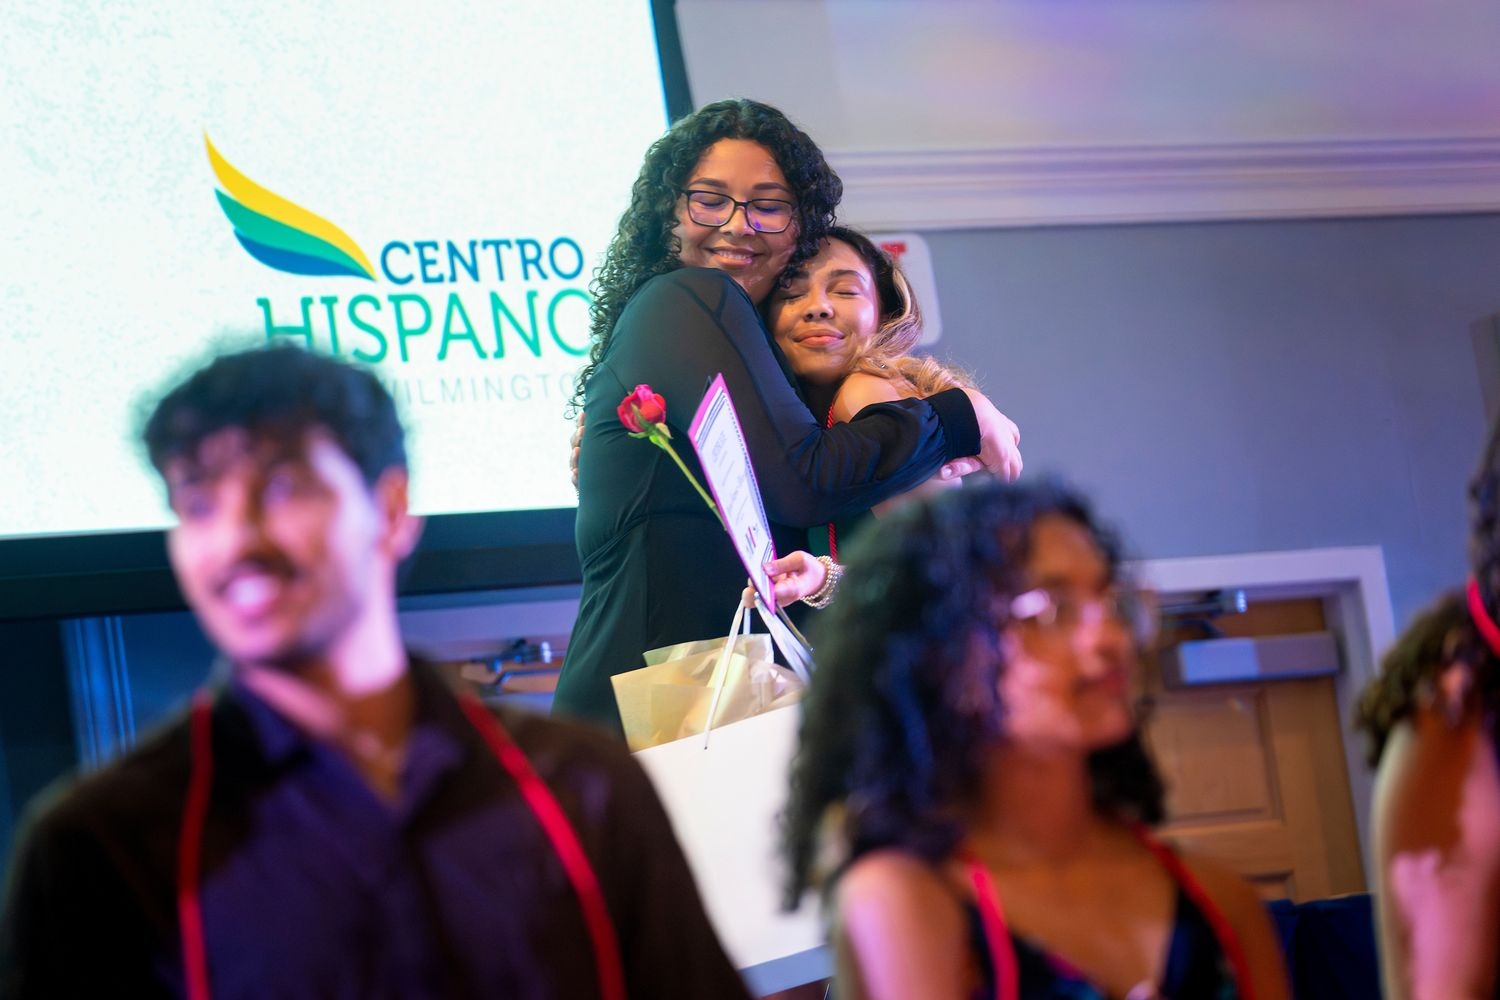 centro hispano hug